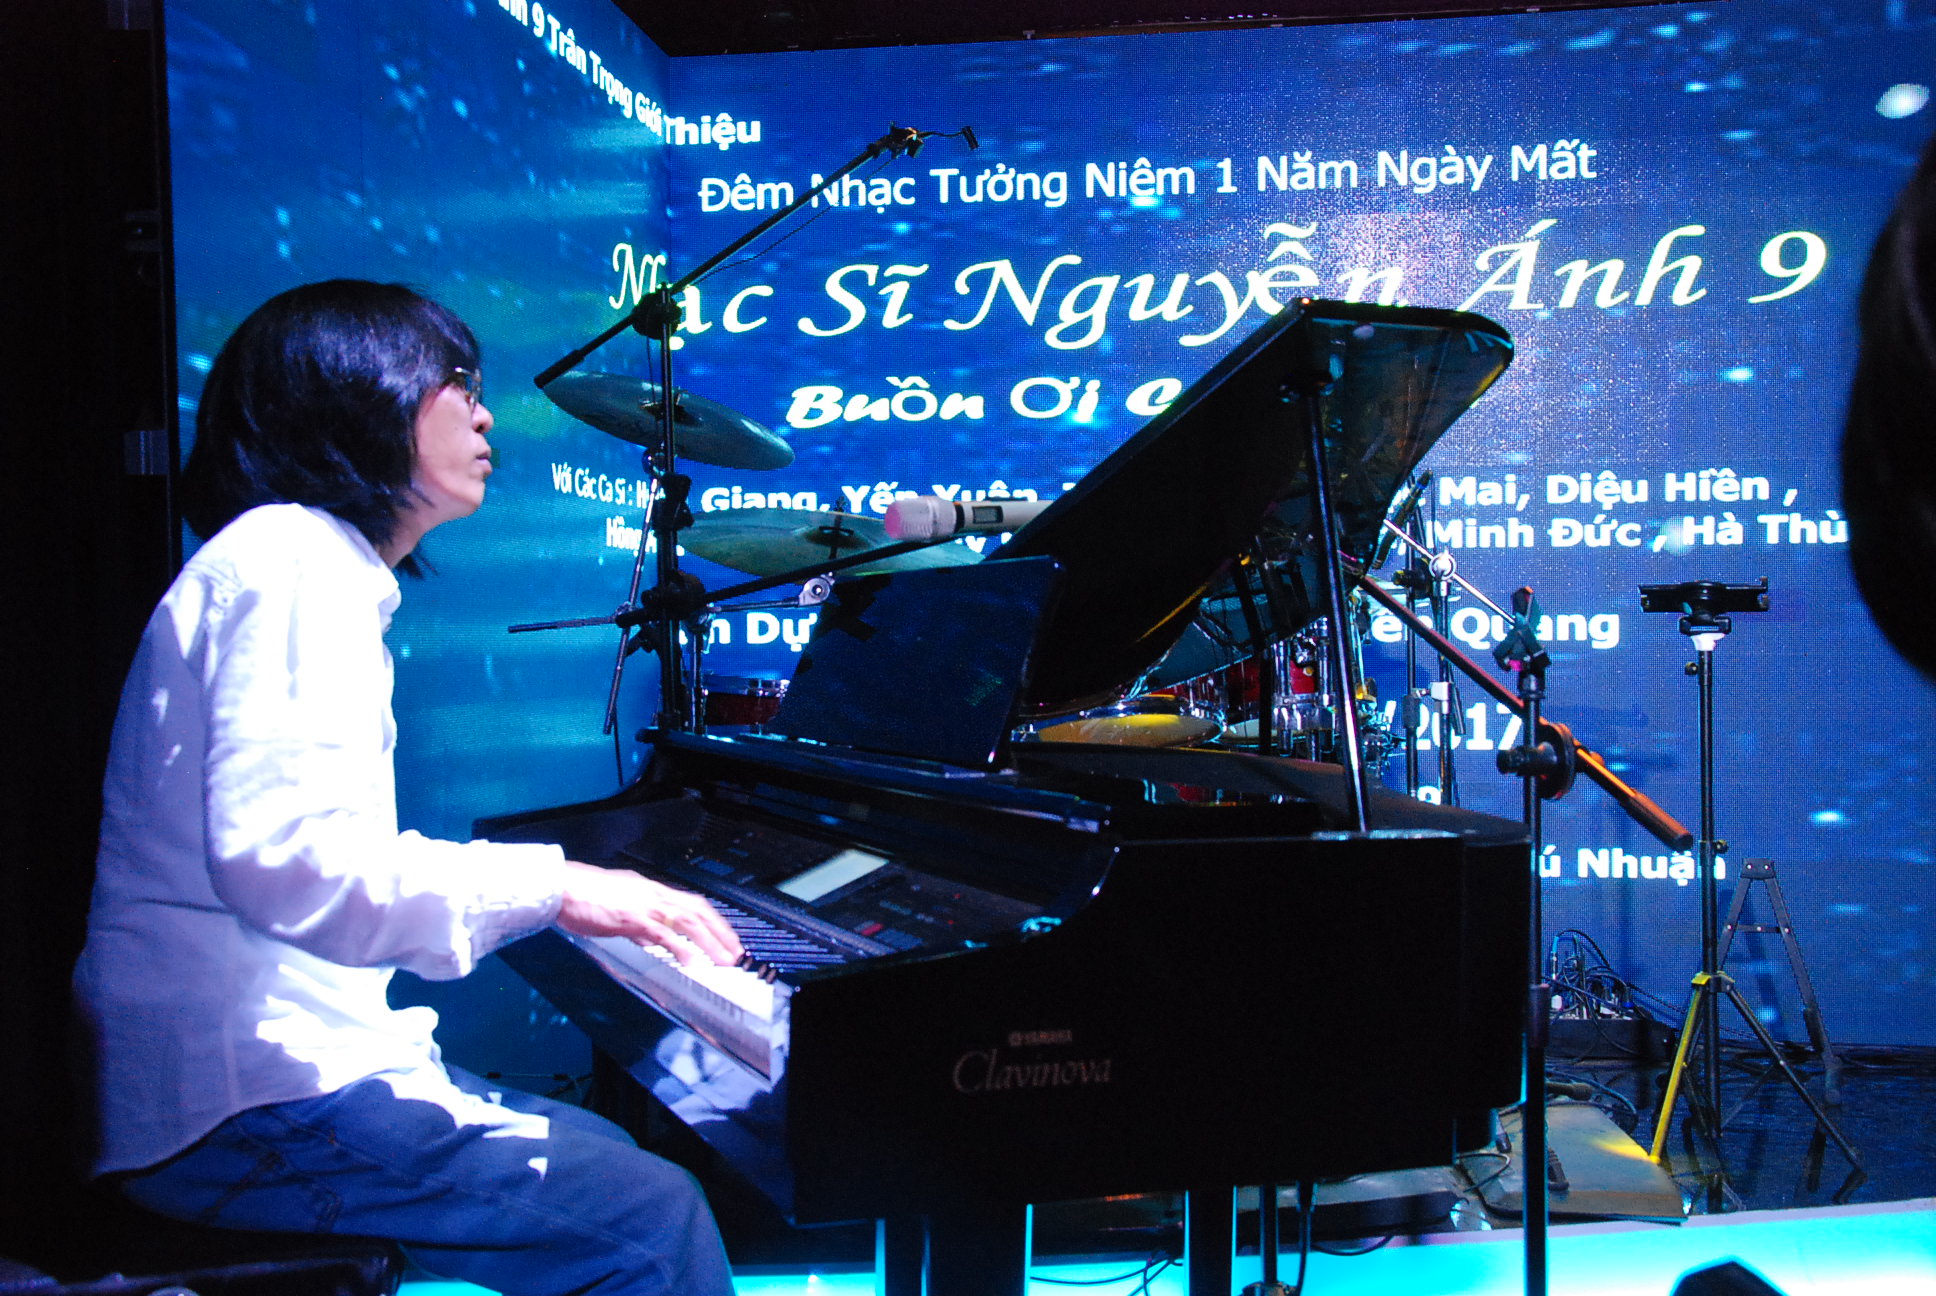 Liveshow Nguyễn Ánh 9 - Đêm nhạc tưởng niệm ngày mất tại phòng trà mang tên ông